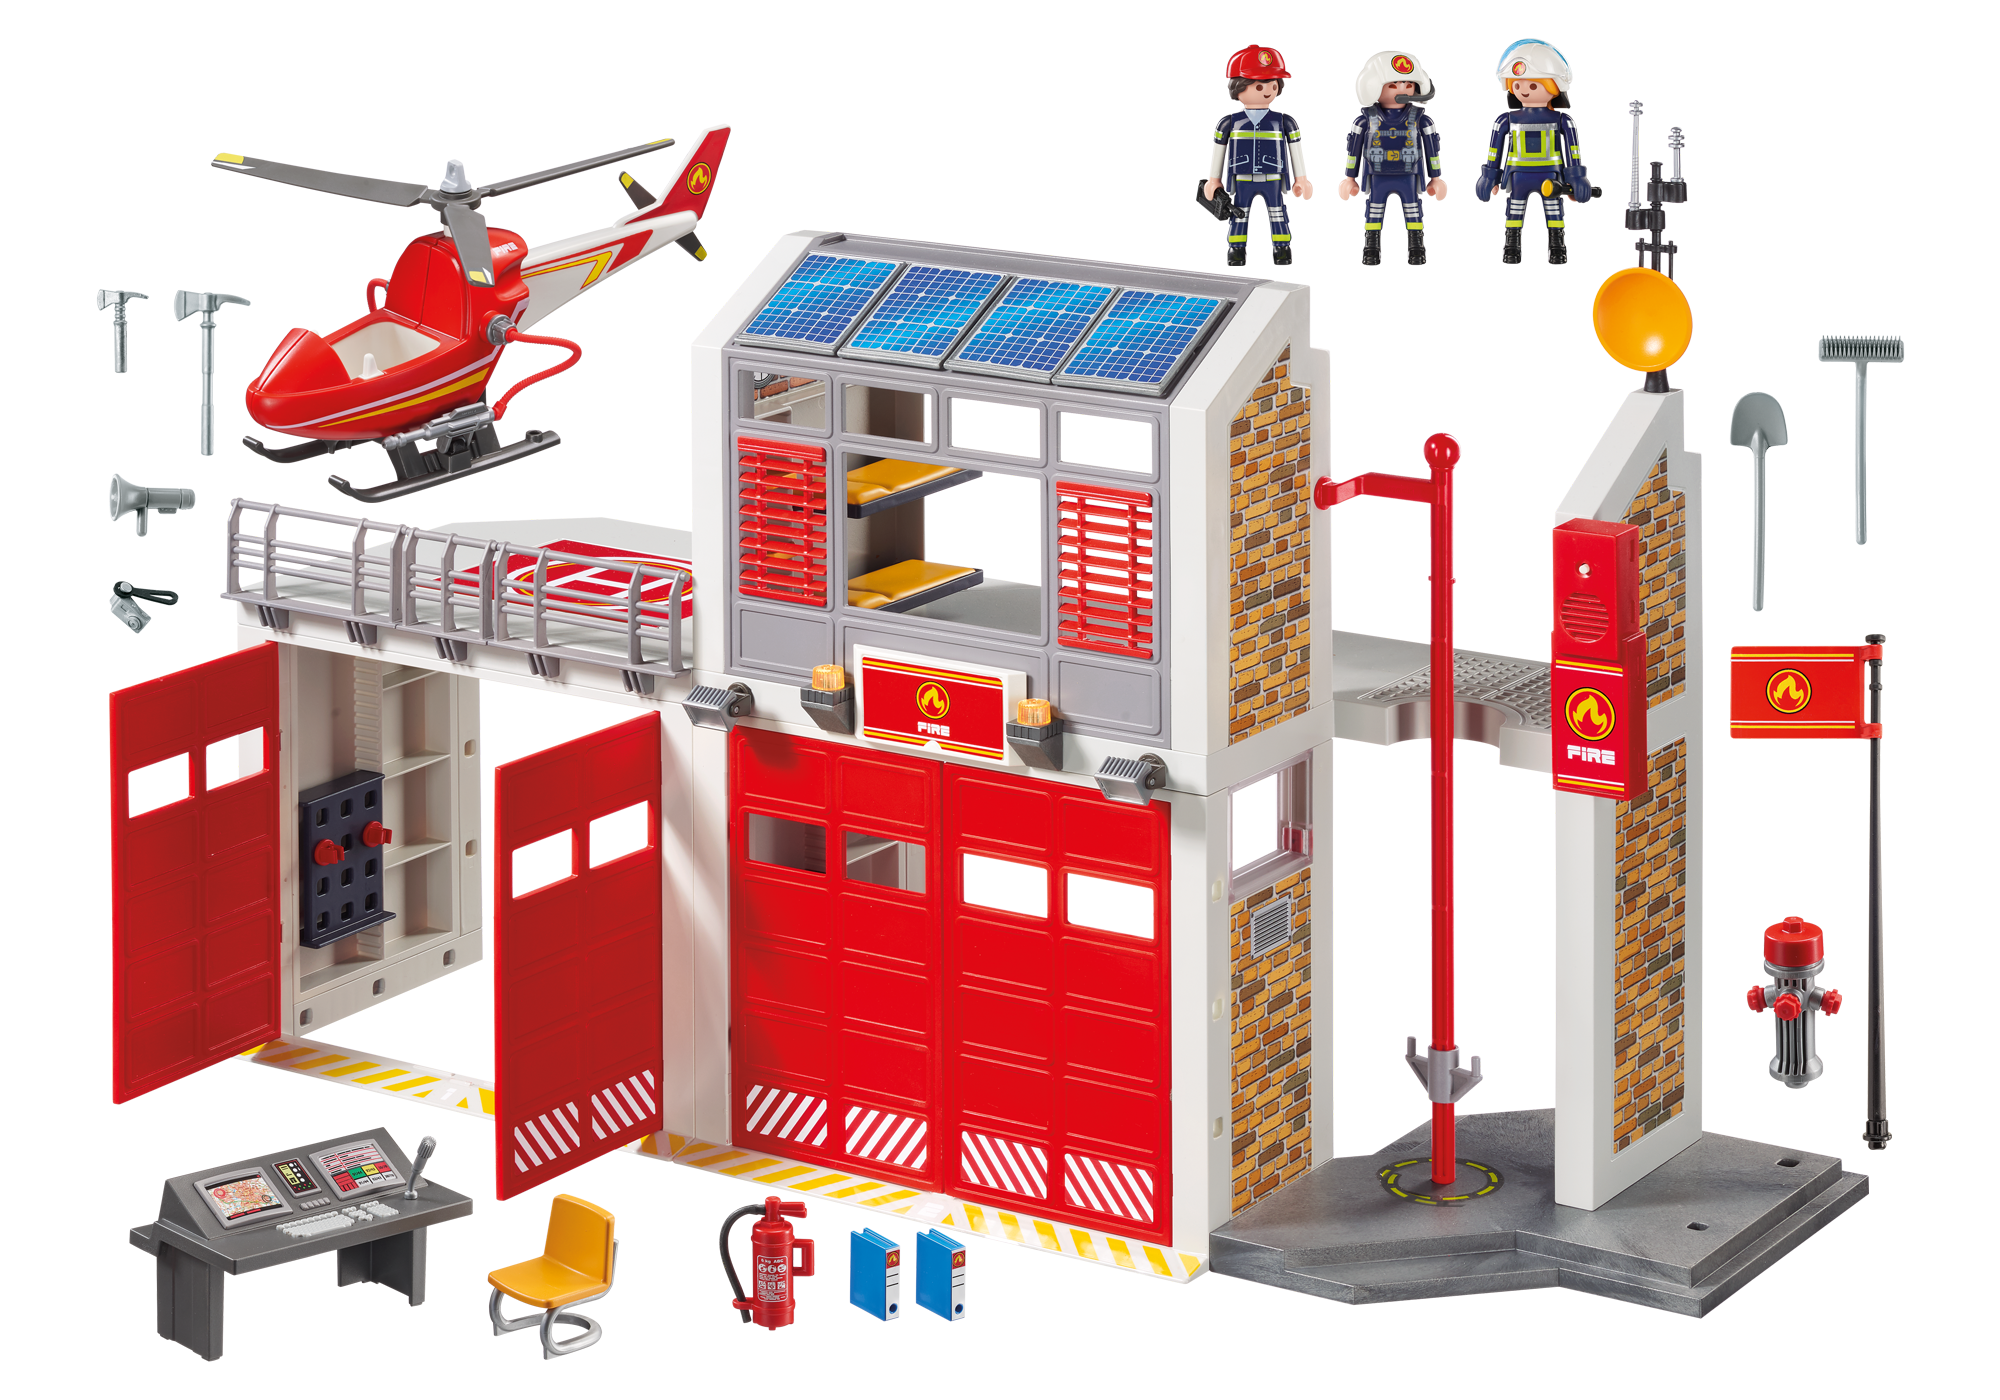 playmobil caserne de pompiers